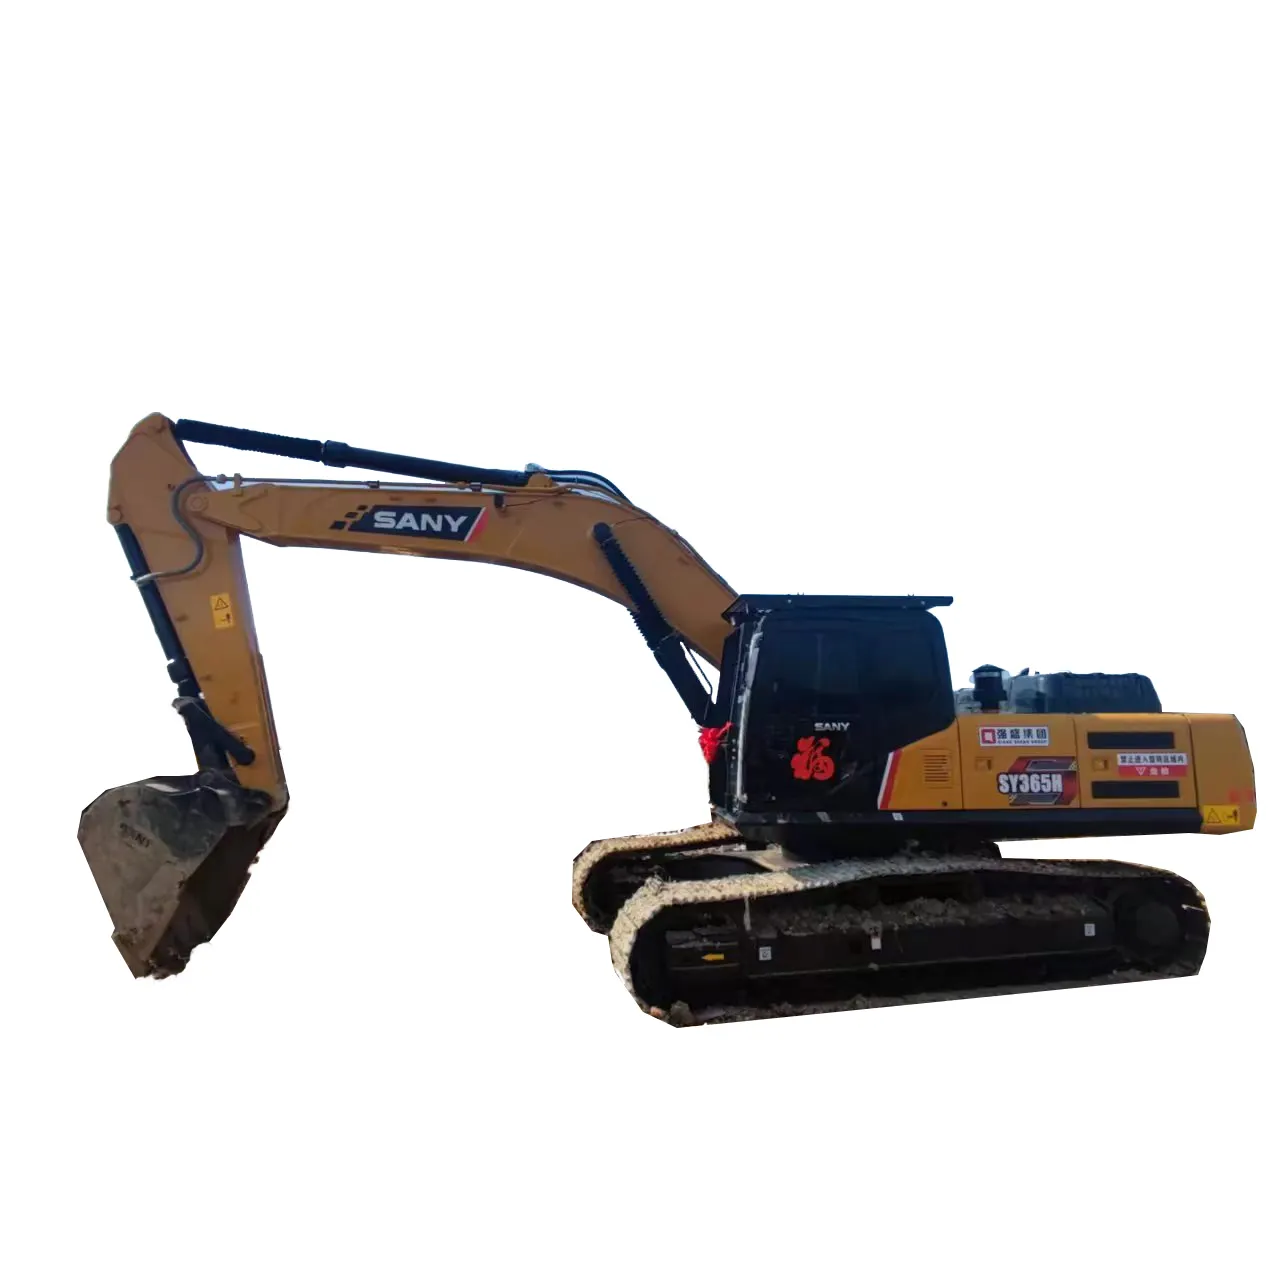 Usato scavatrice a mano escavatore usato marchio cinese di ingegneria edile macchinari Sany 365 ad alte prestazioni prezzo poco costoso per la vendita